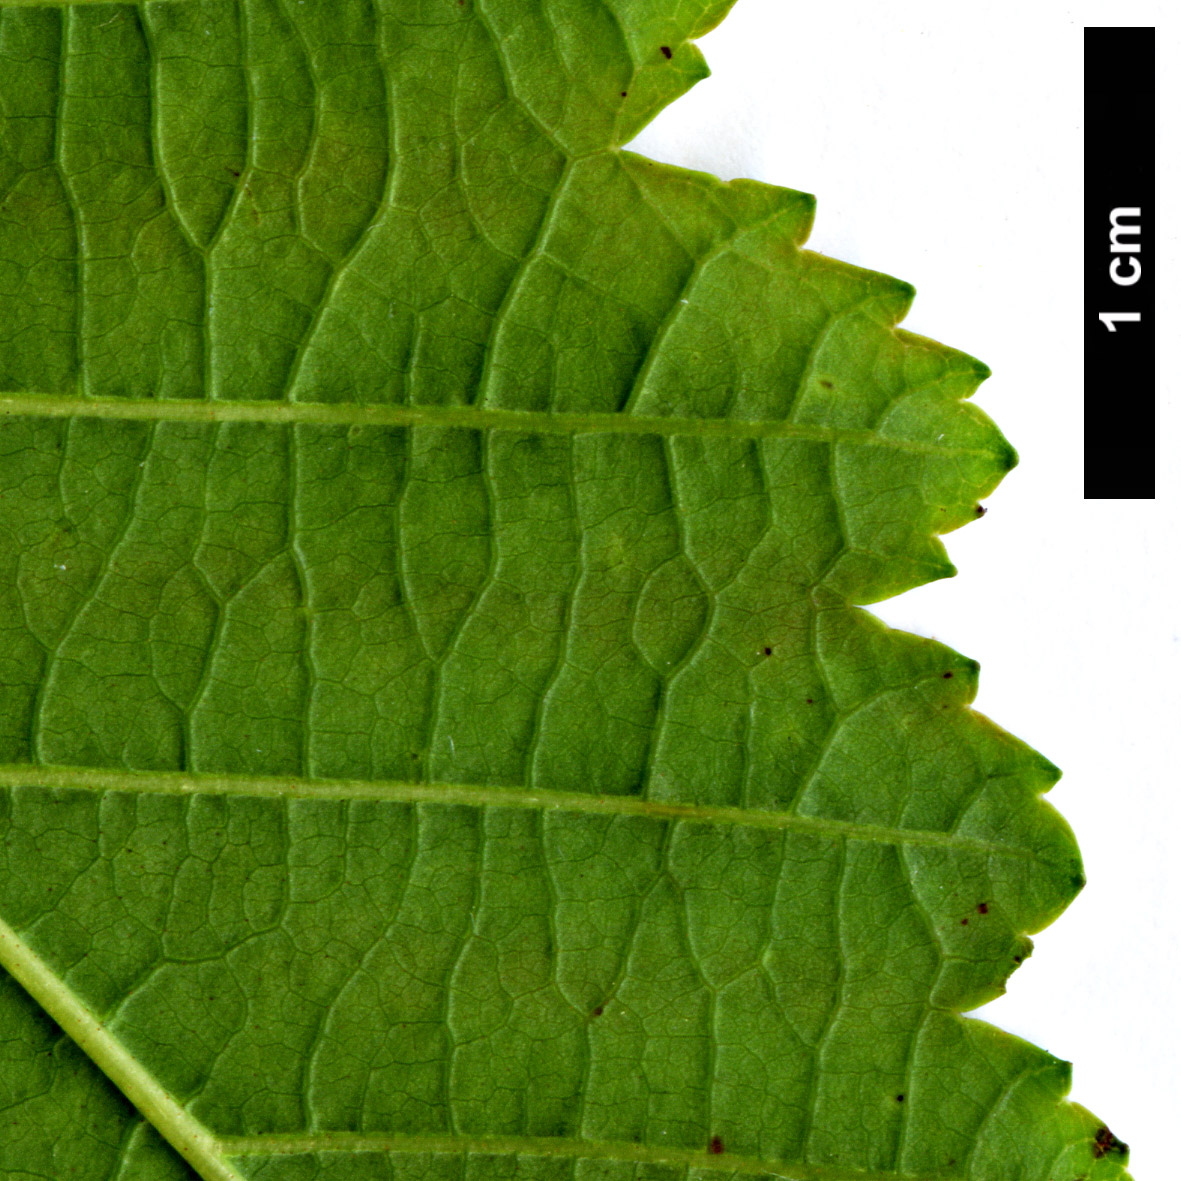 High resolution image: Family: Betulaceae - Genus: Alnus - Taxon: incana - SpeciesSub: subsp. tenuifolia